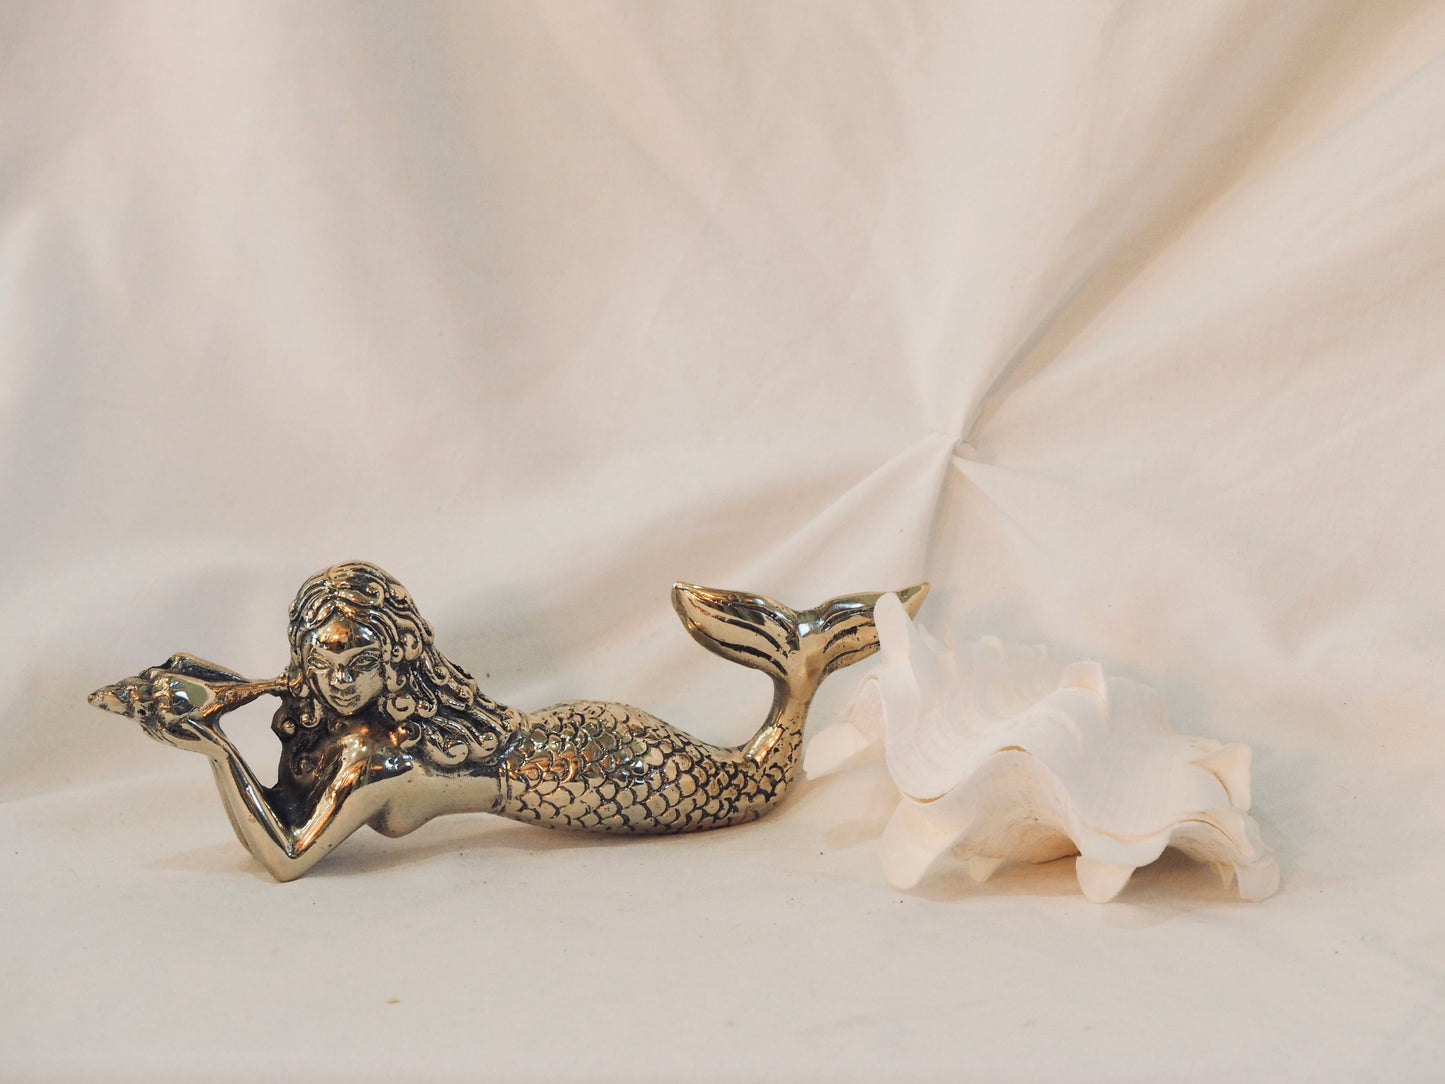 Mermaid Lying Down - vintage gold